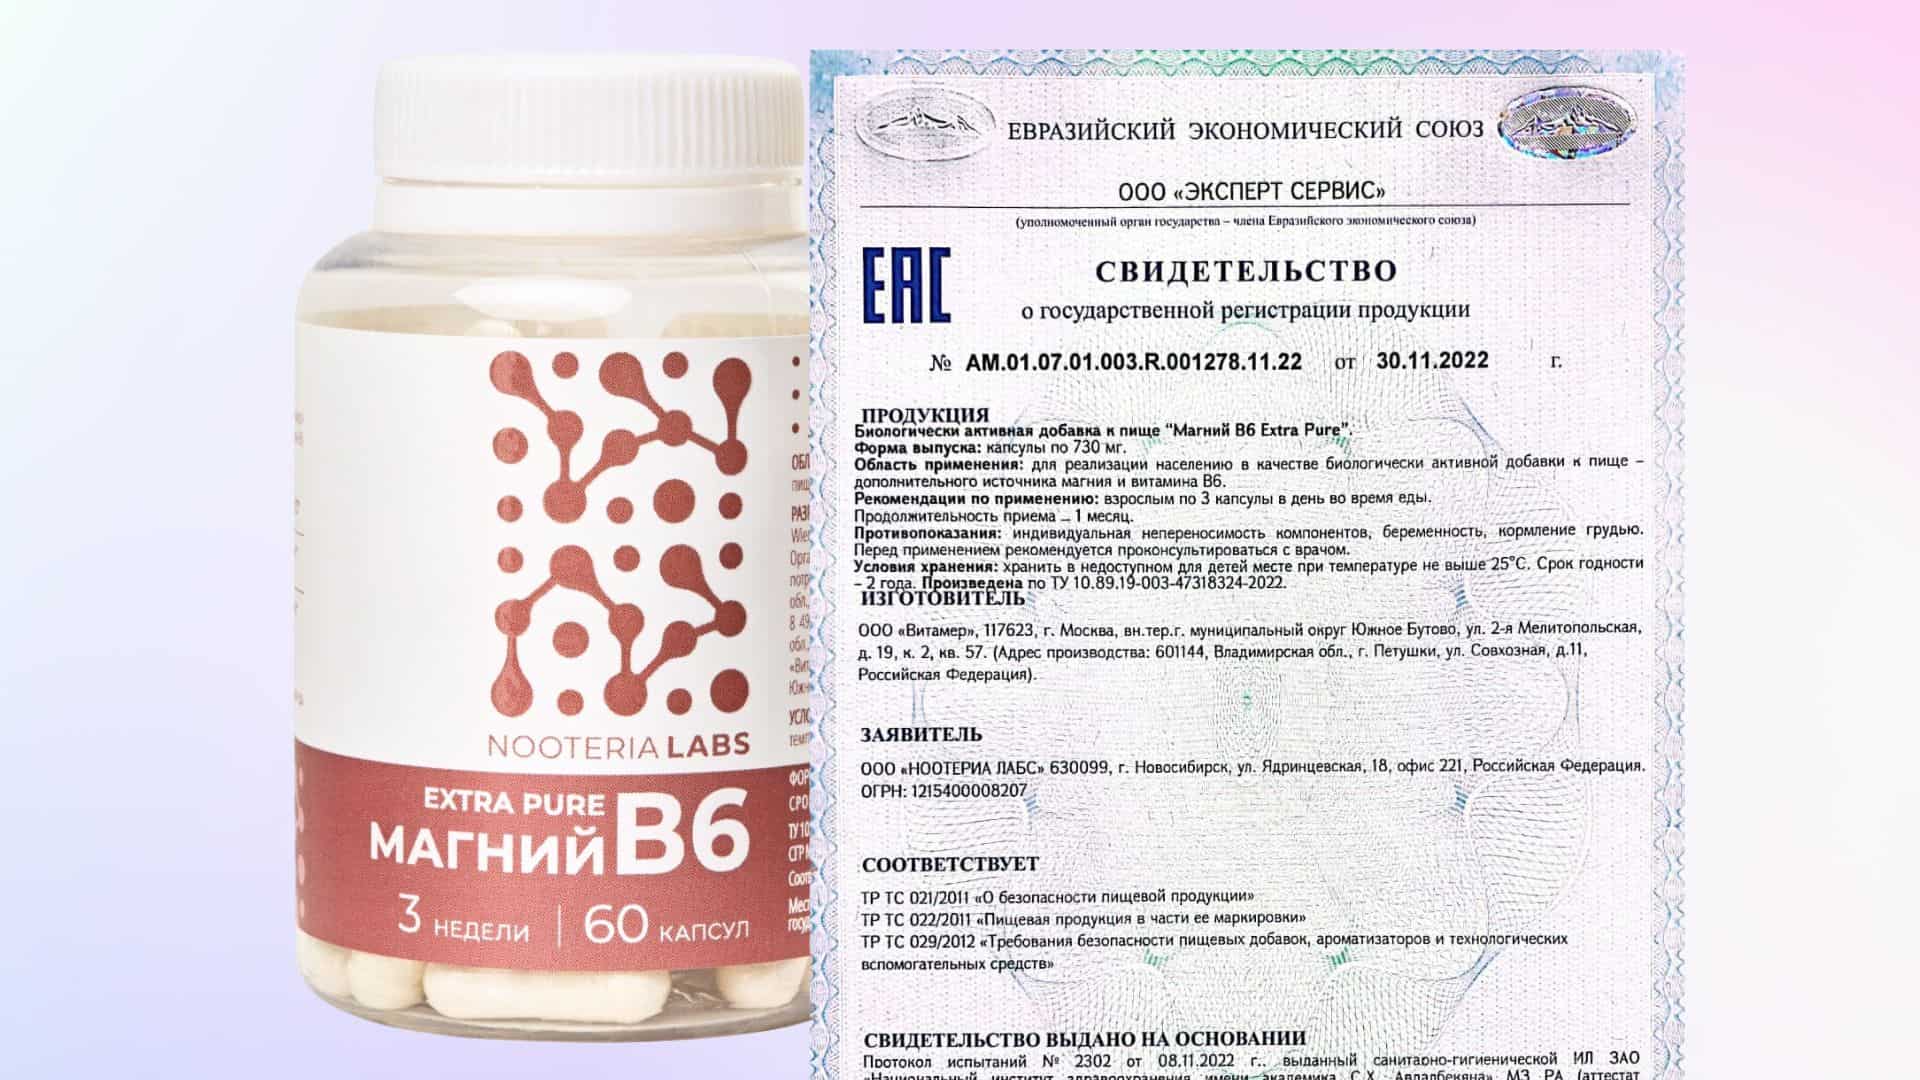 Магний B6 Extra Pure официально одобрен к продаже на территории РФ